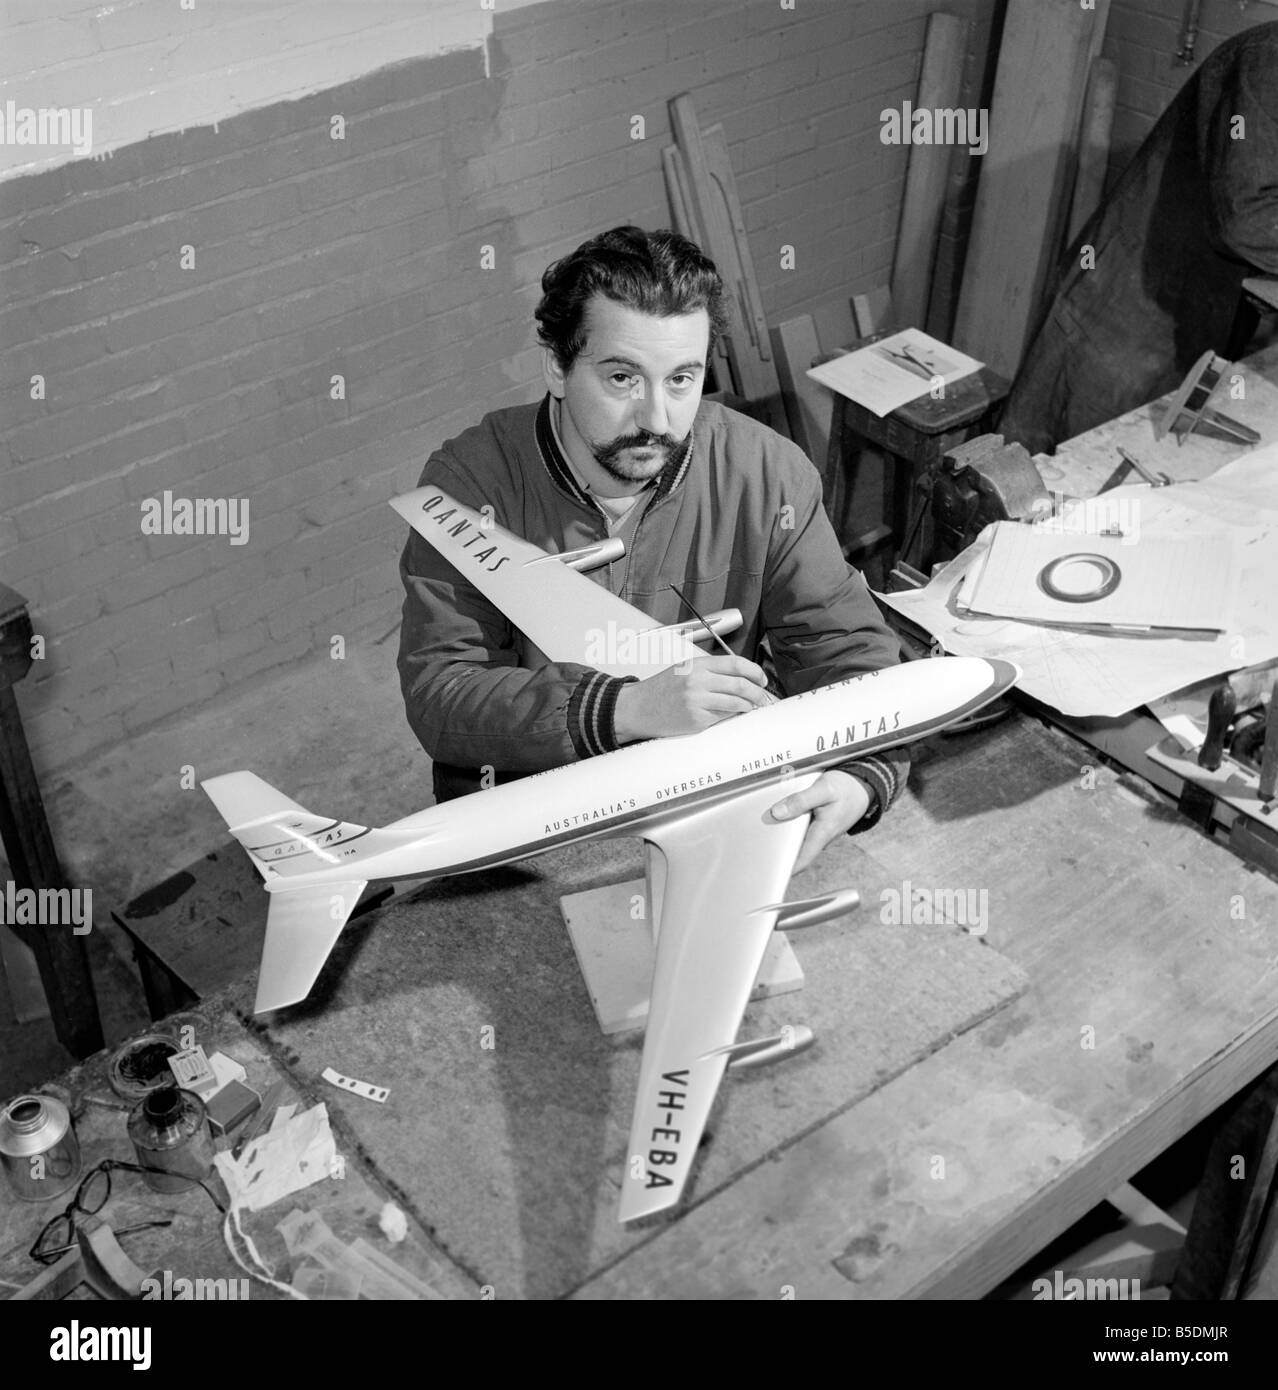 Fabrik wo Flugmodelle für die Reisebüros vorgenommen werden. Männer machen Modellflugzeuge. Modell Hersteller Malerei Rumpf des Modells ca. 1960 Stockfoto